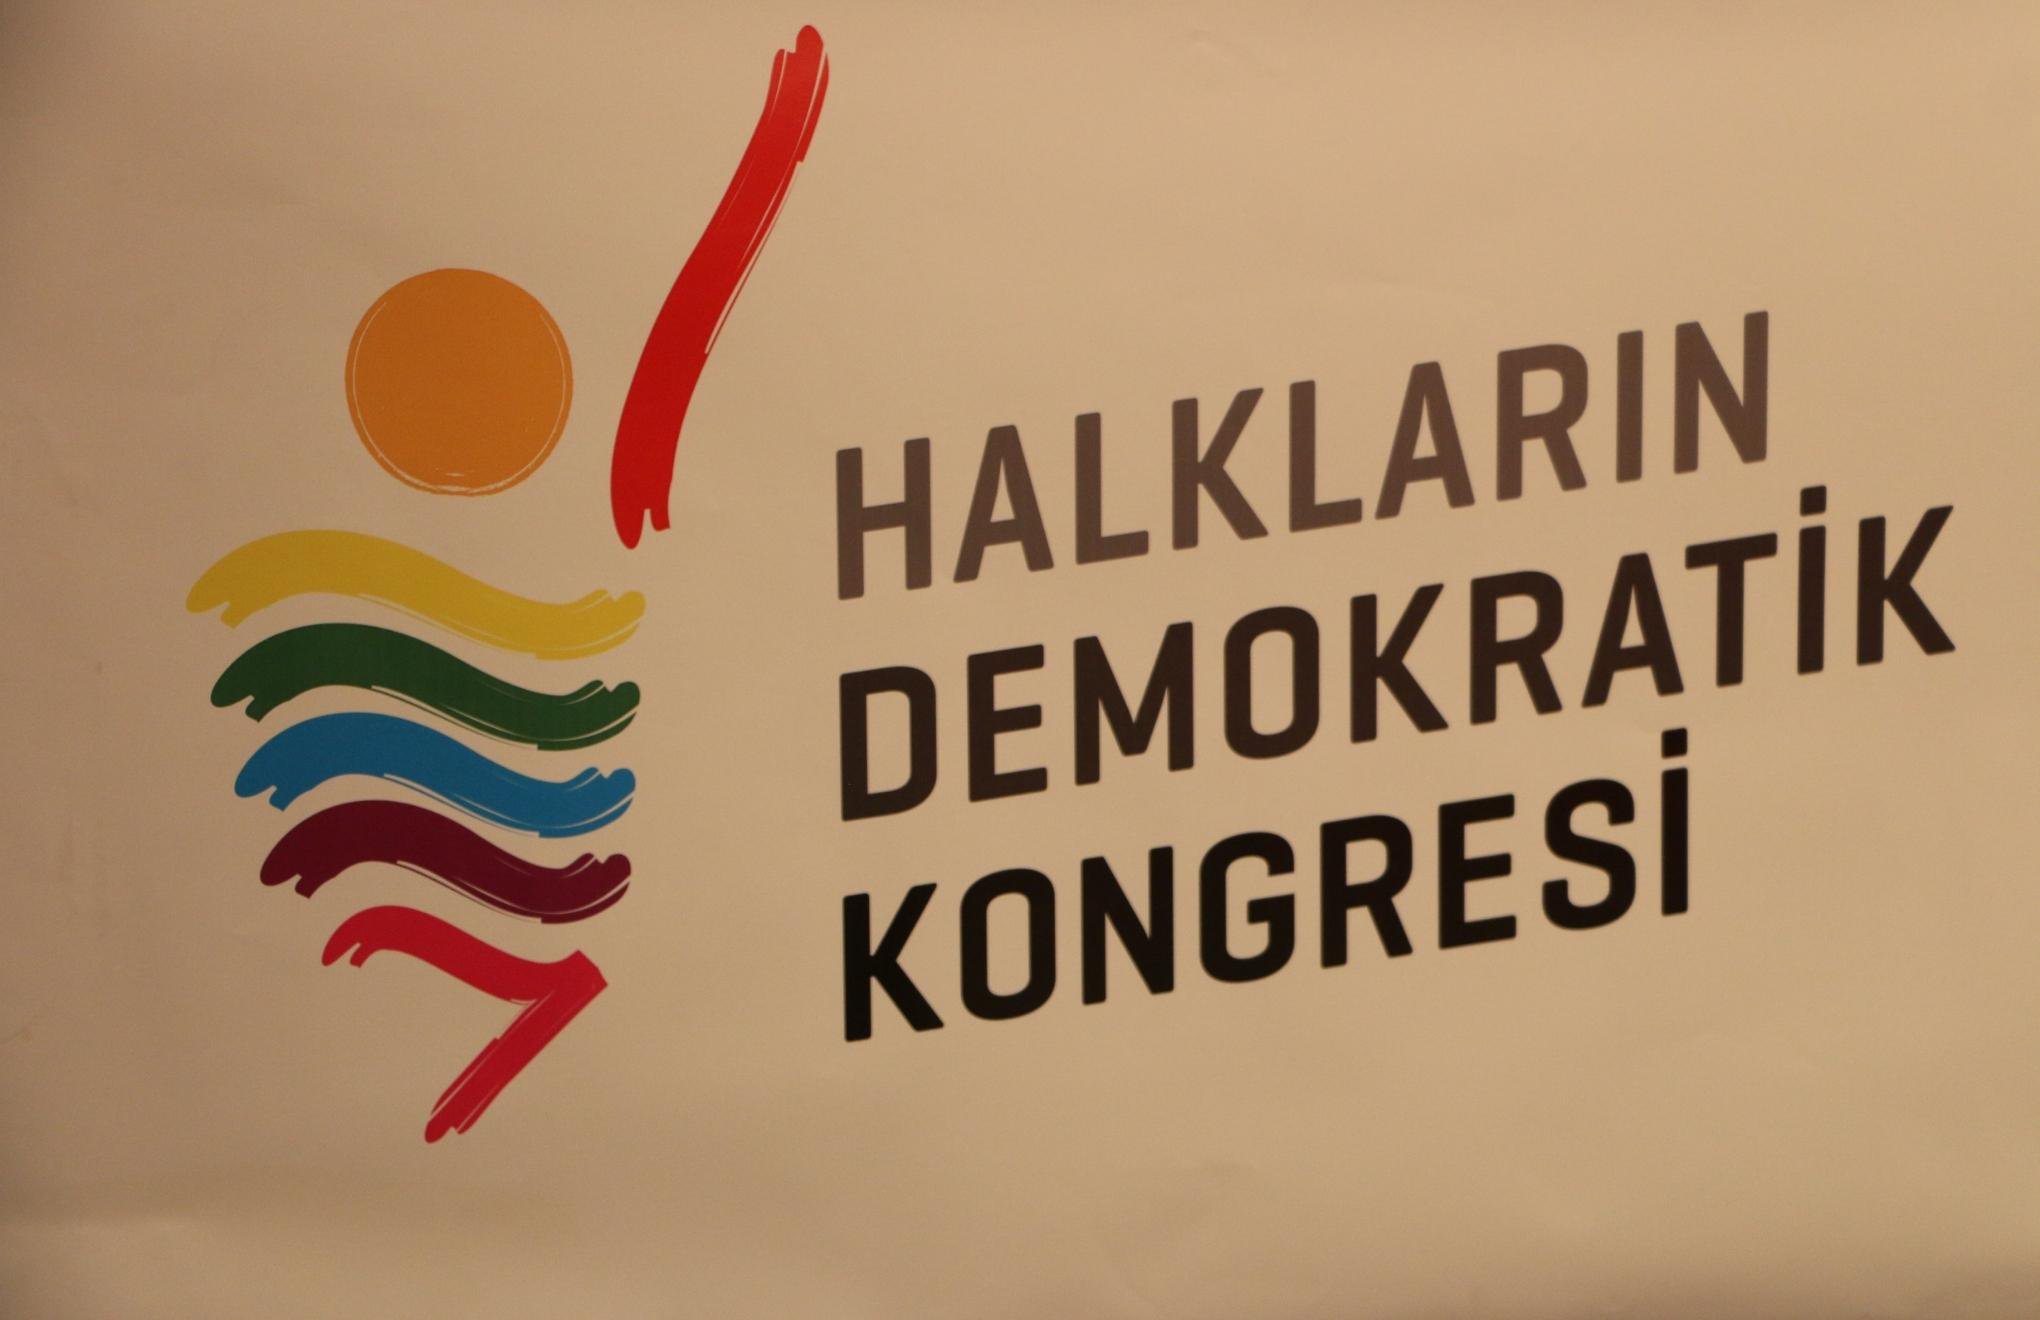 HDK: Demokrasi ittifakı geliştirilmeli ve güçlendirilmeli